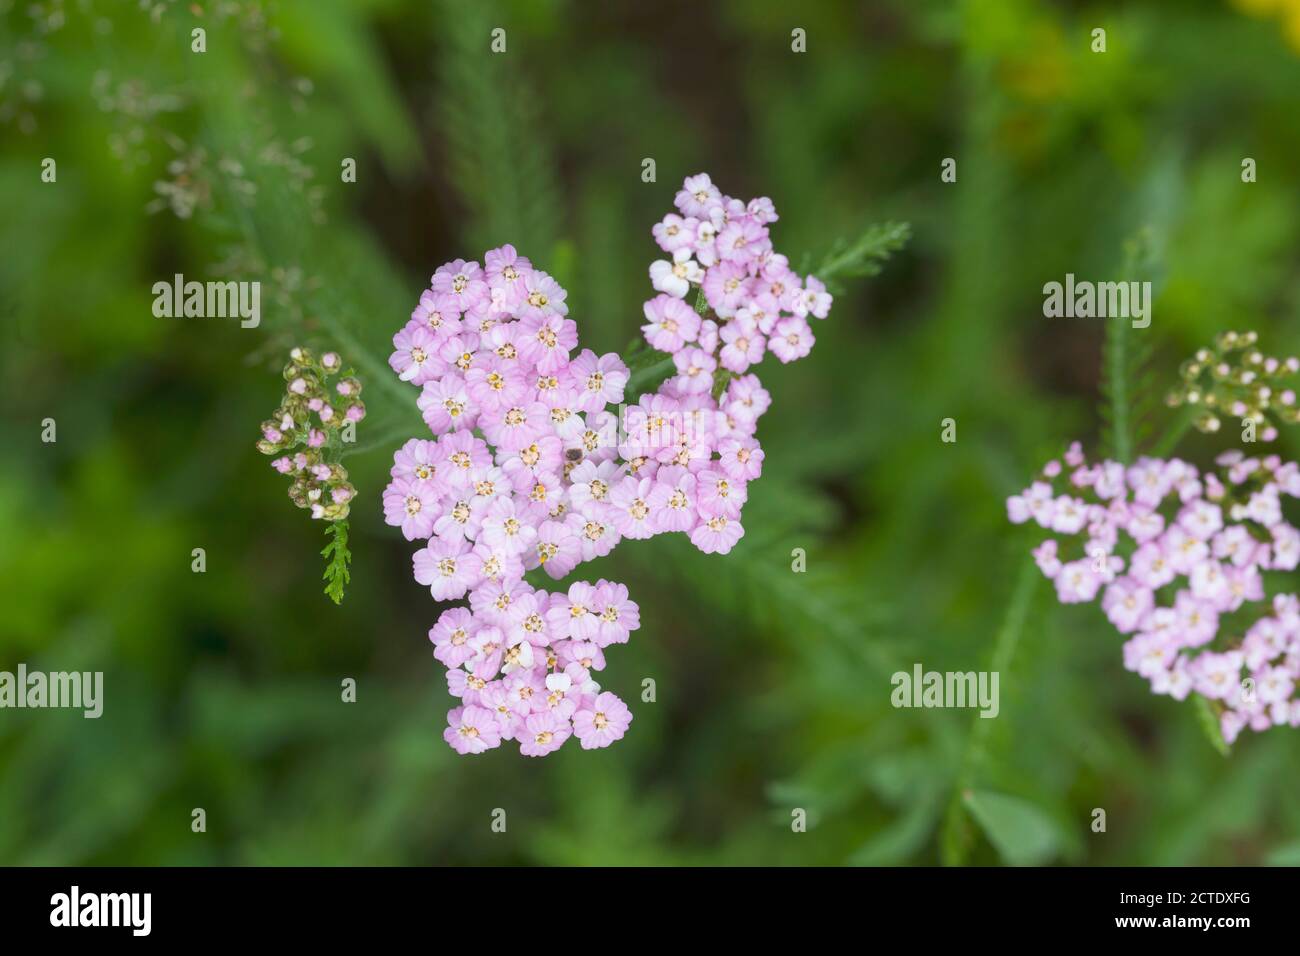 Yarrow, Common yarrow (Achillea millefolium), with pink flowers, Germany Stock Photo